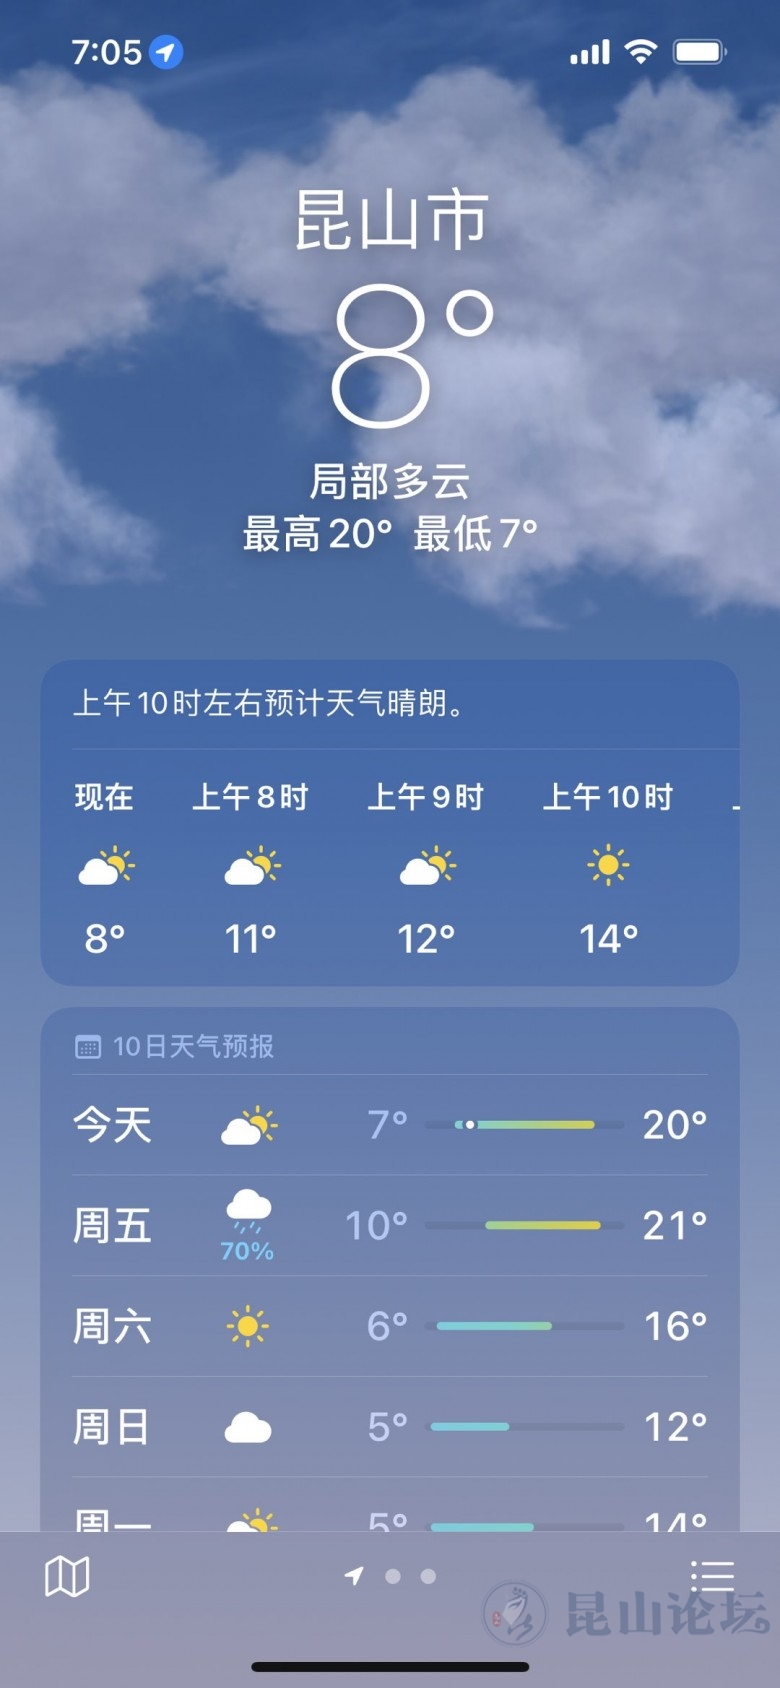 3月3日天气预报:今天昆山最高气温20度,夜里有小雨